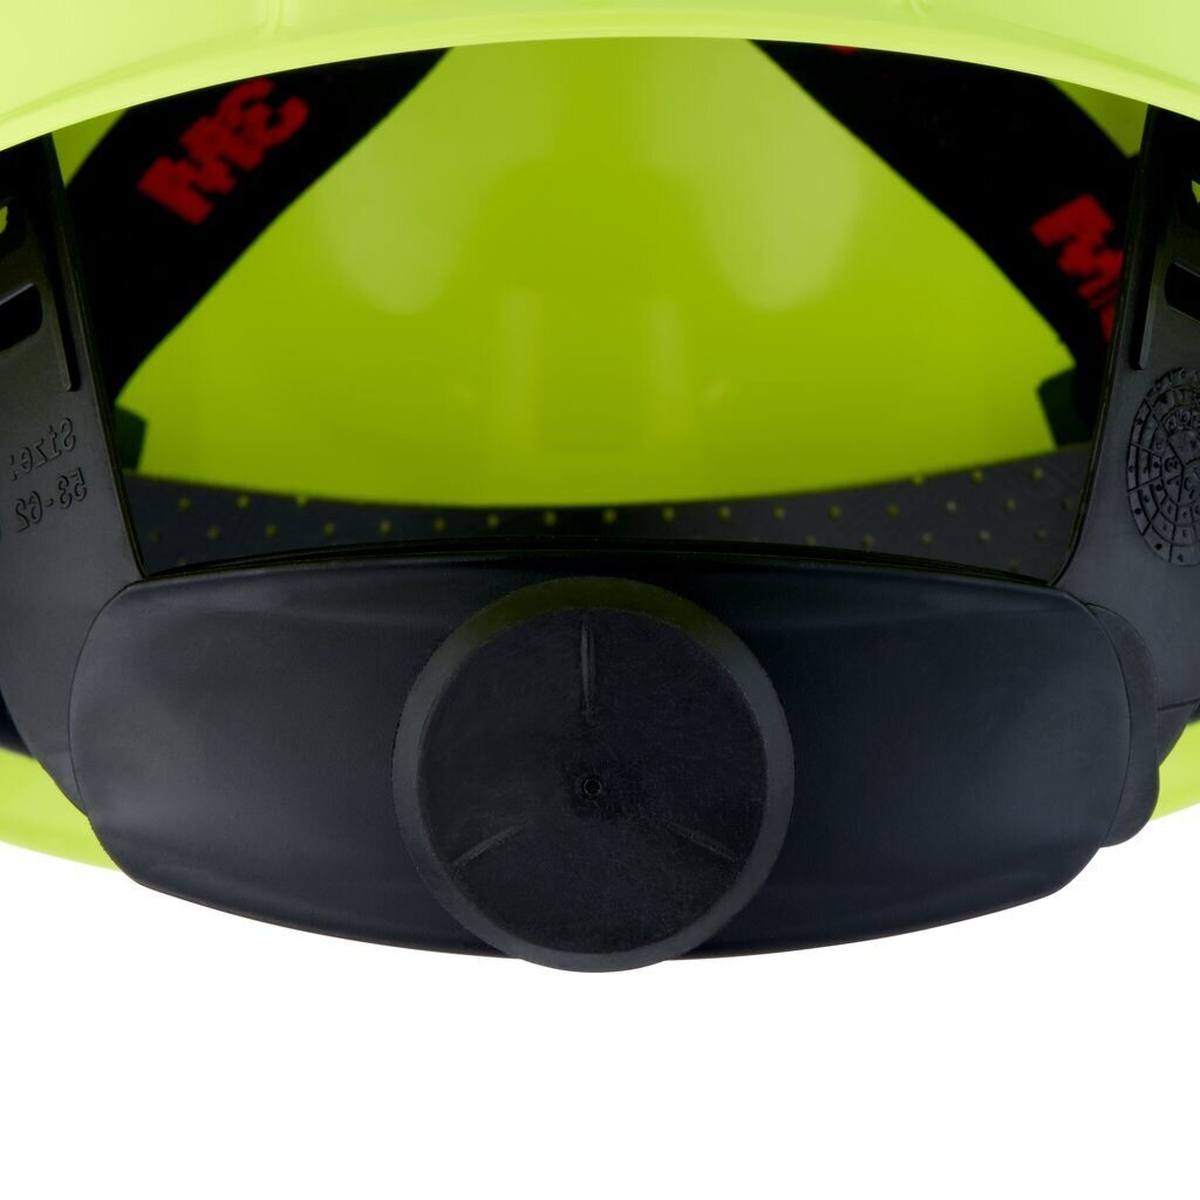 3M G3000 casque de protection G30NUV en vert fluo, ventilé, avec uvicator, cliquet et bande de soudure en plastique